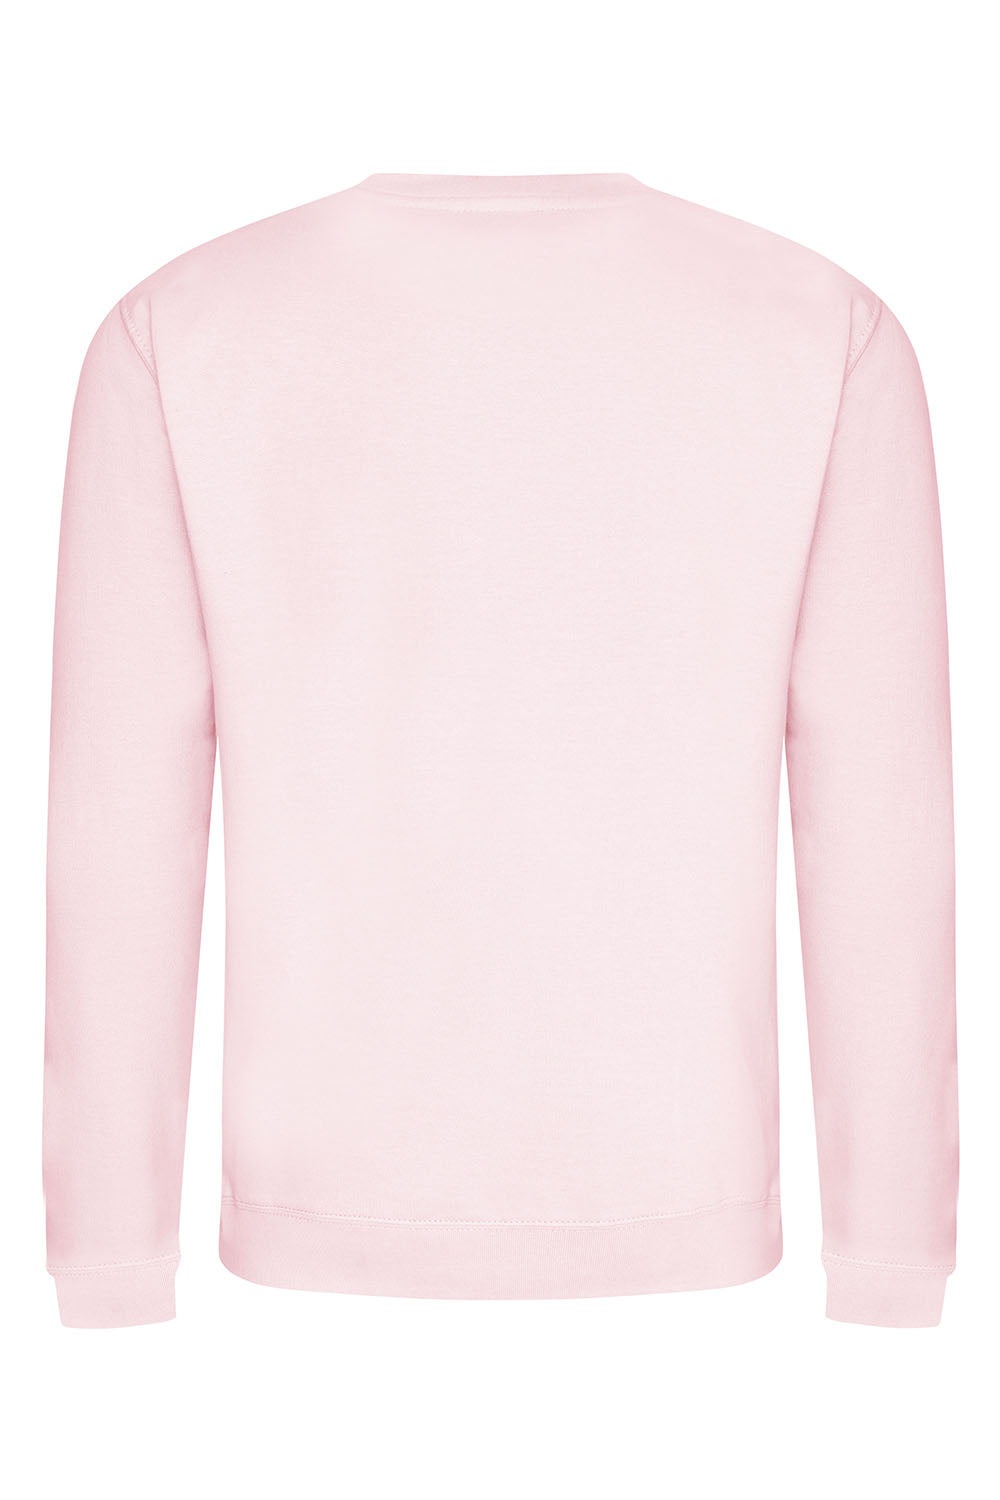 Stay Western Sweatshirt In Baby Pink (Custom Pack)